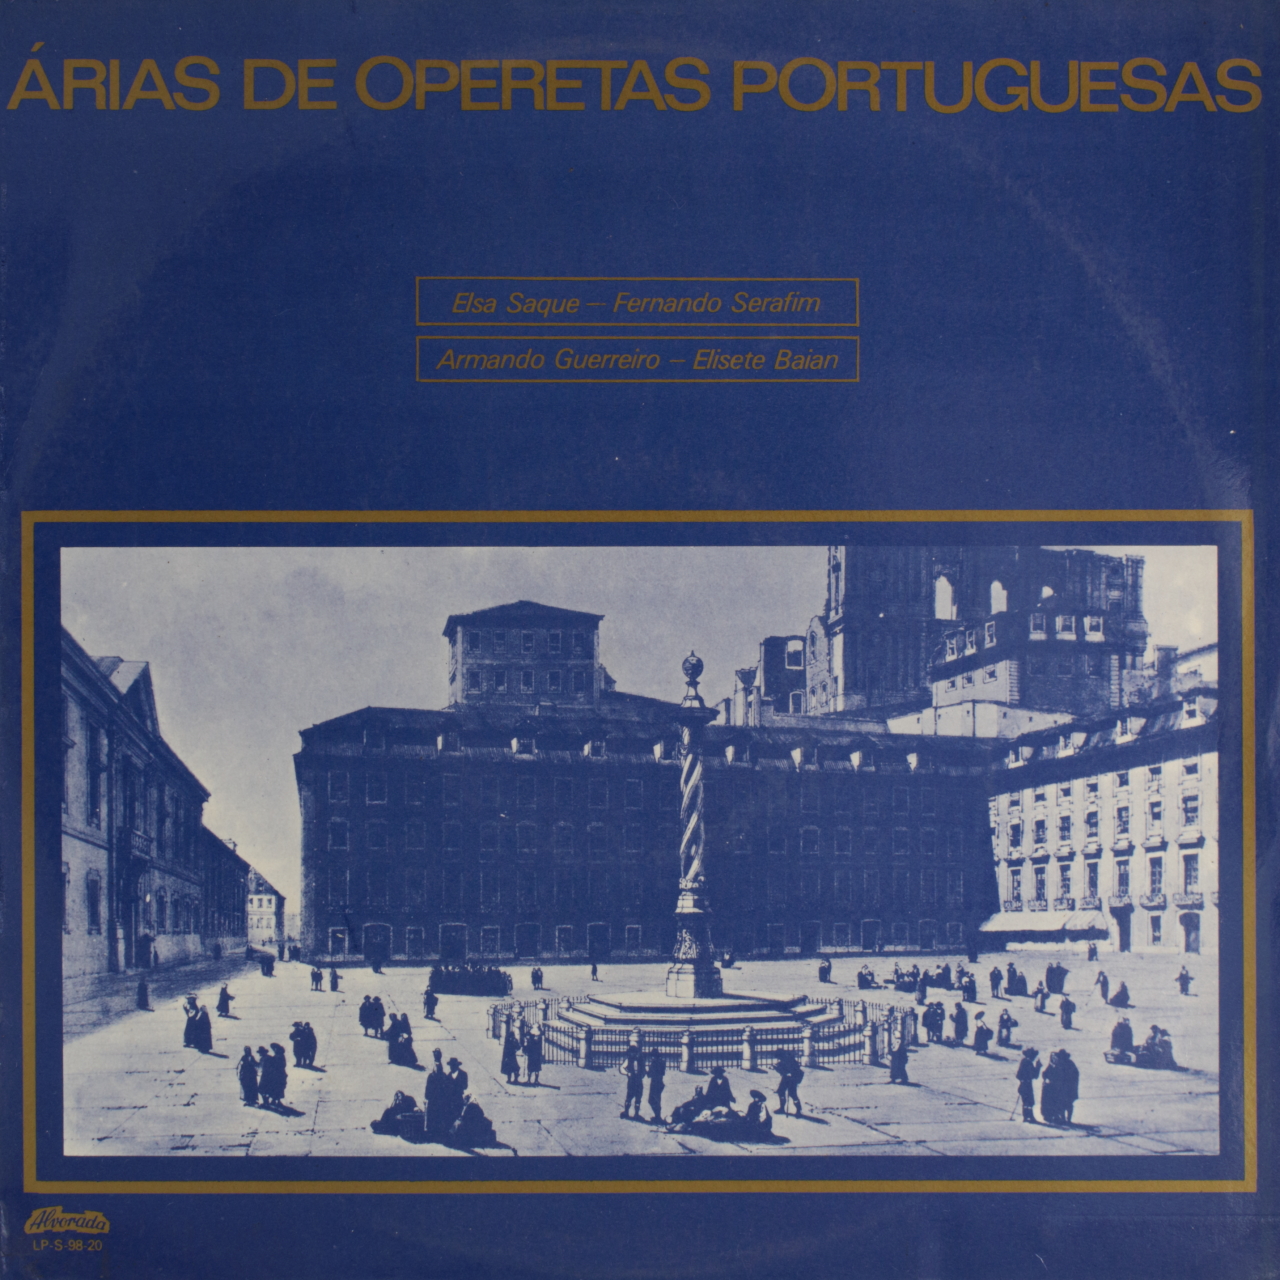 Árias de operetas portuguesas